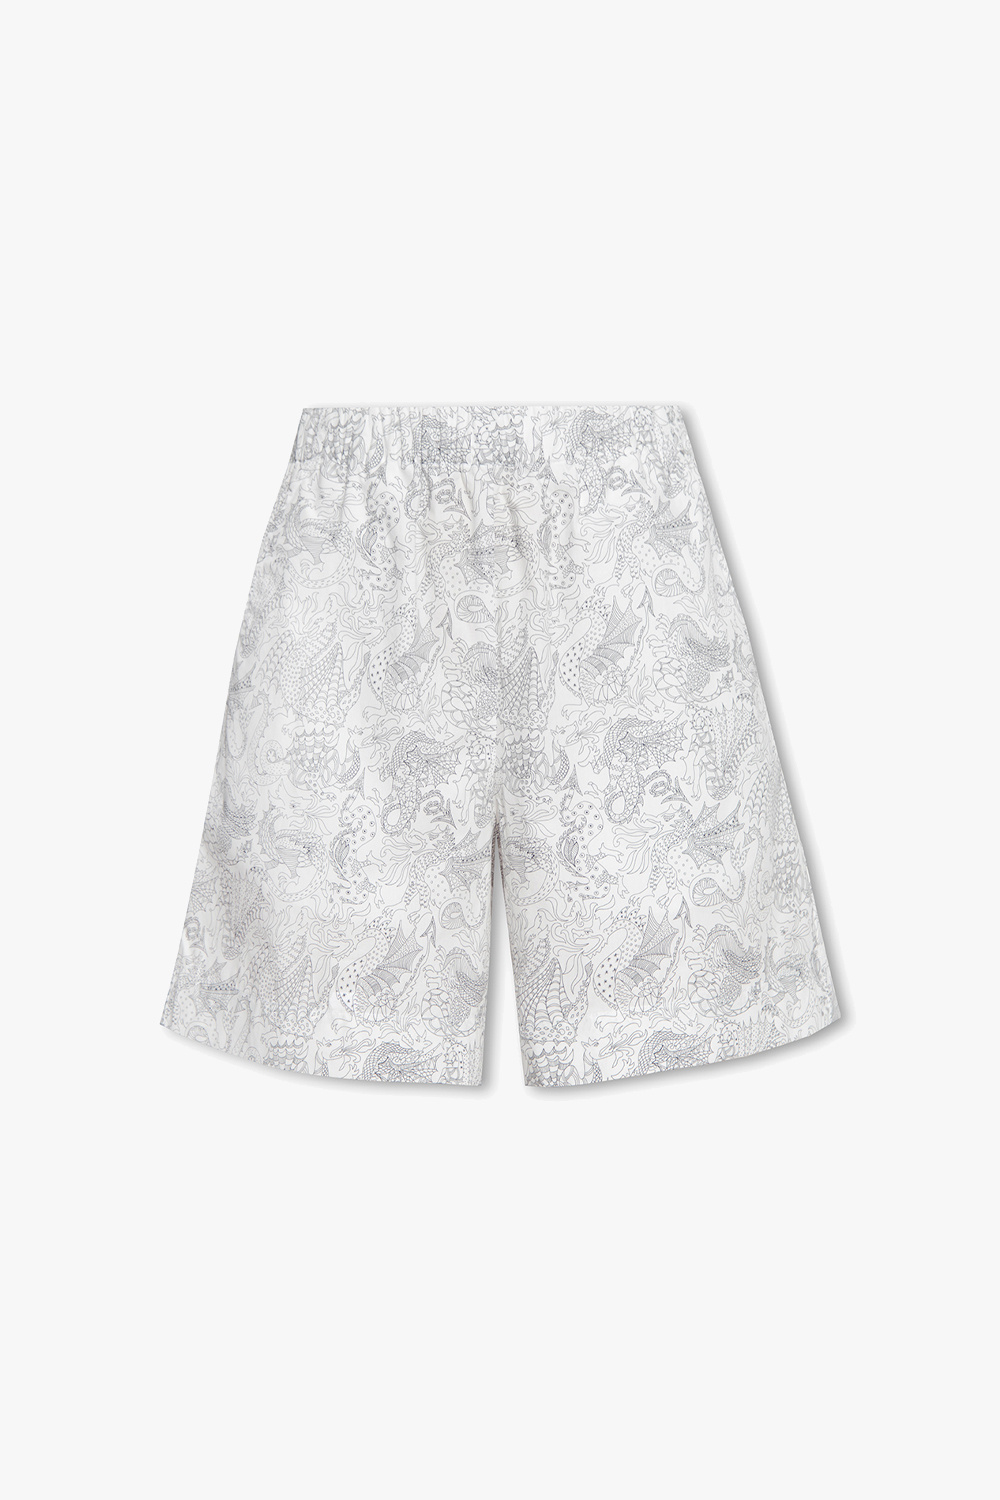 Louis Vuitton Designer Spandex Women Underwear/boy Shorts -  UK